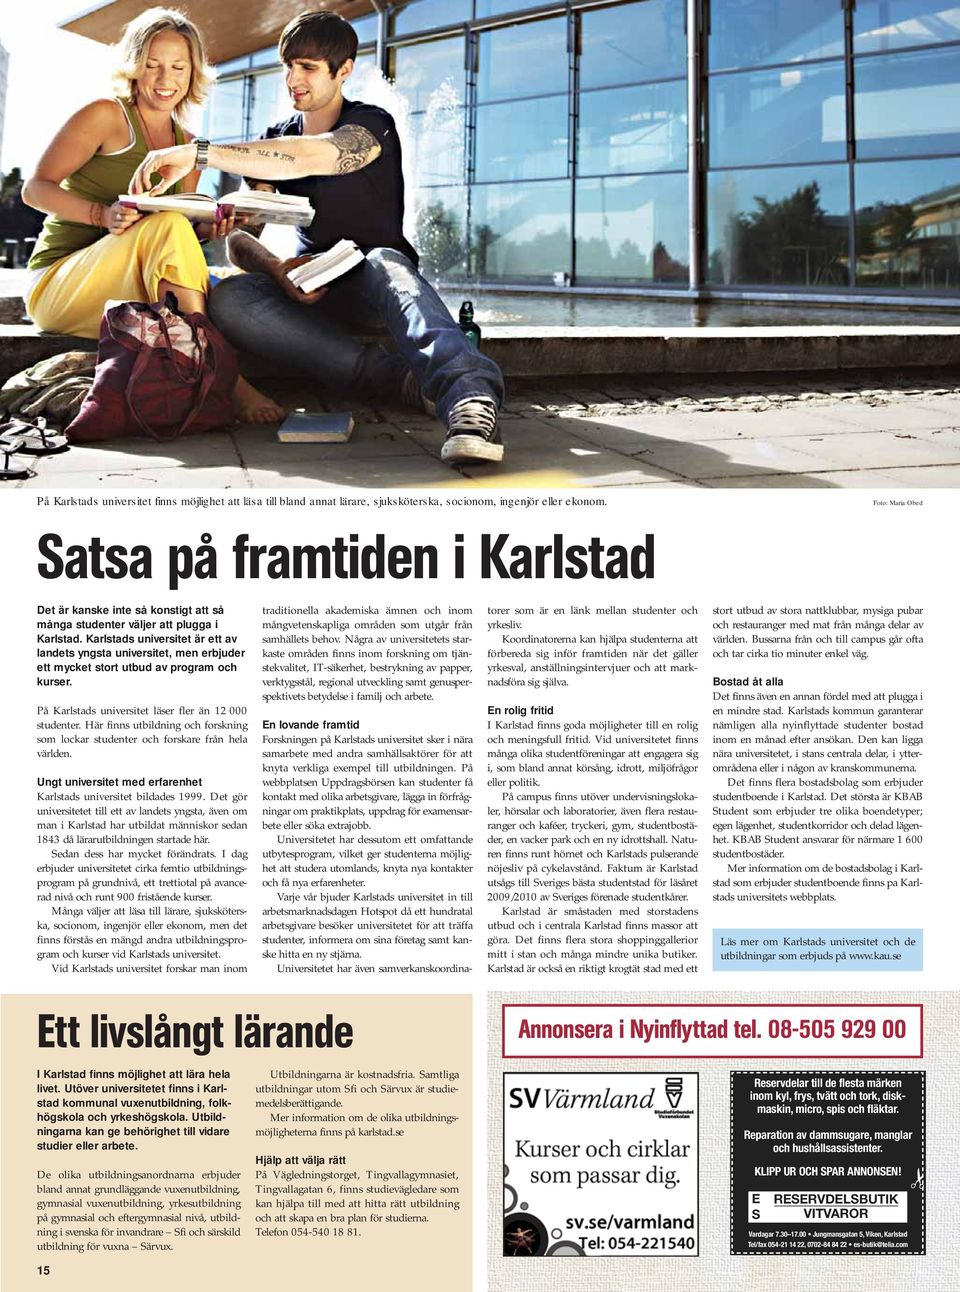 Karlstads universitet är ett av landets yngsta universitet, men erbjuder ett mycket stort utbud av program och kurser. På Karlstads universitet läser fler än 12 000 studenter.